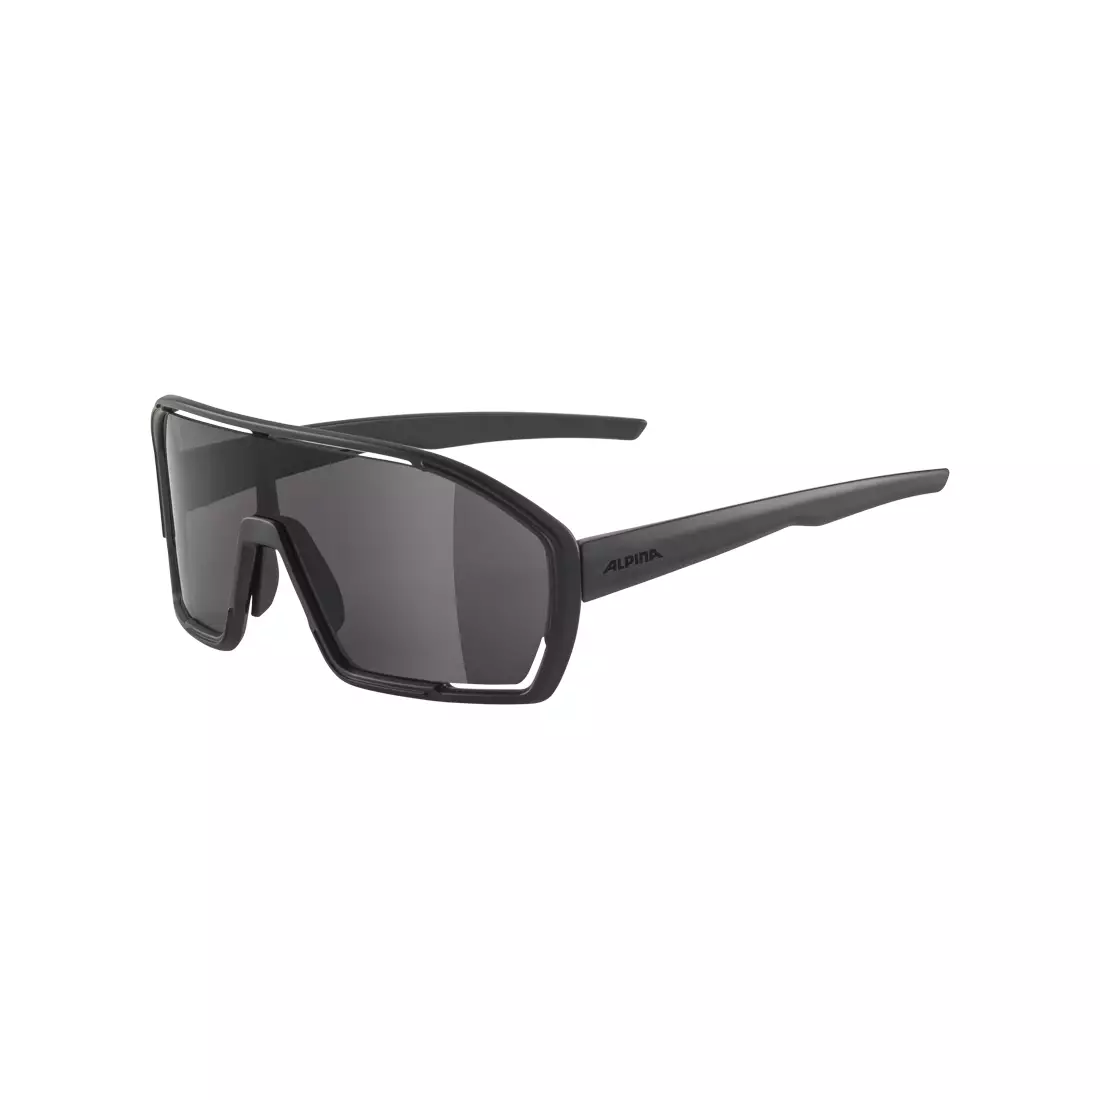 ALPINA Sport szemüveg BONFIRE BLACK MATT - MIRROR BLACK, A8687431